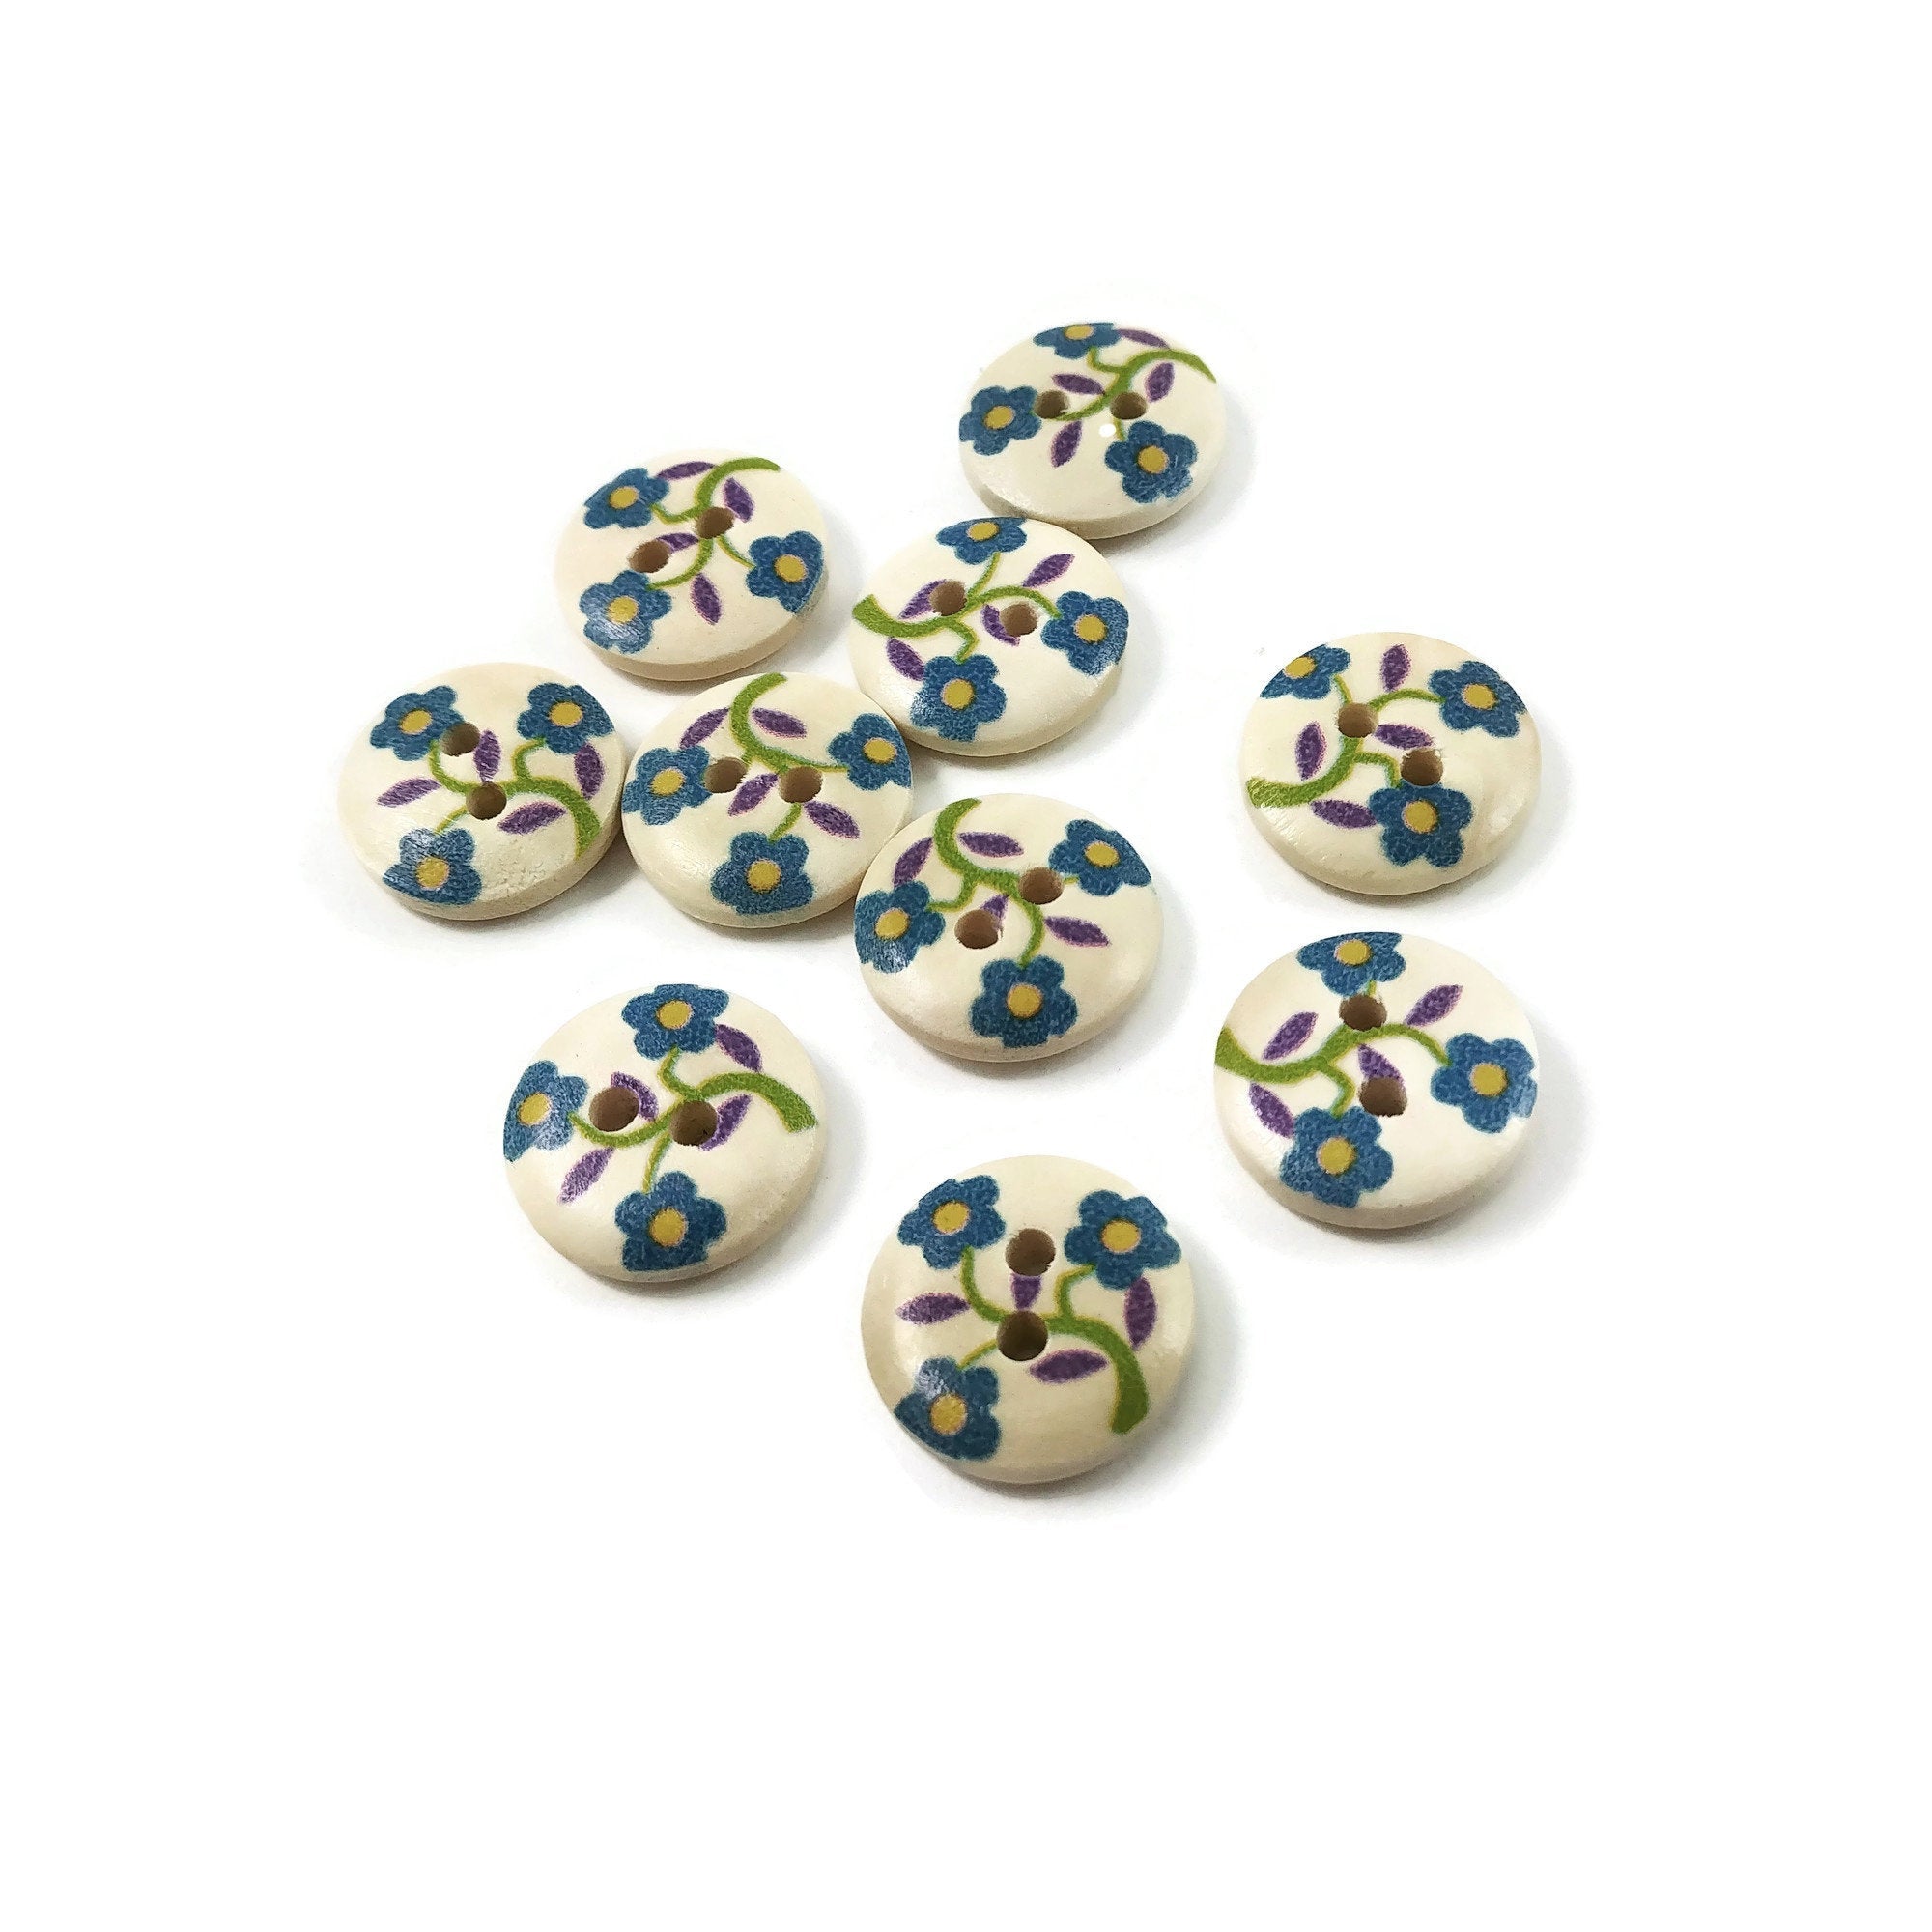 10 boutons de bois peint avec un motif fleur bleu, vert et mauve 15mm